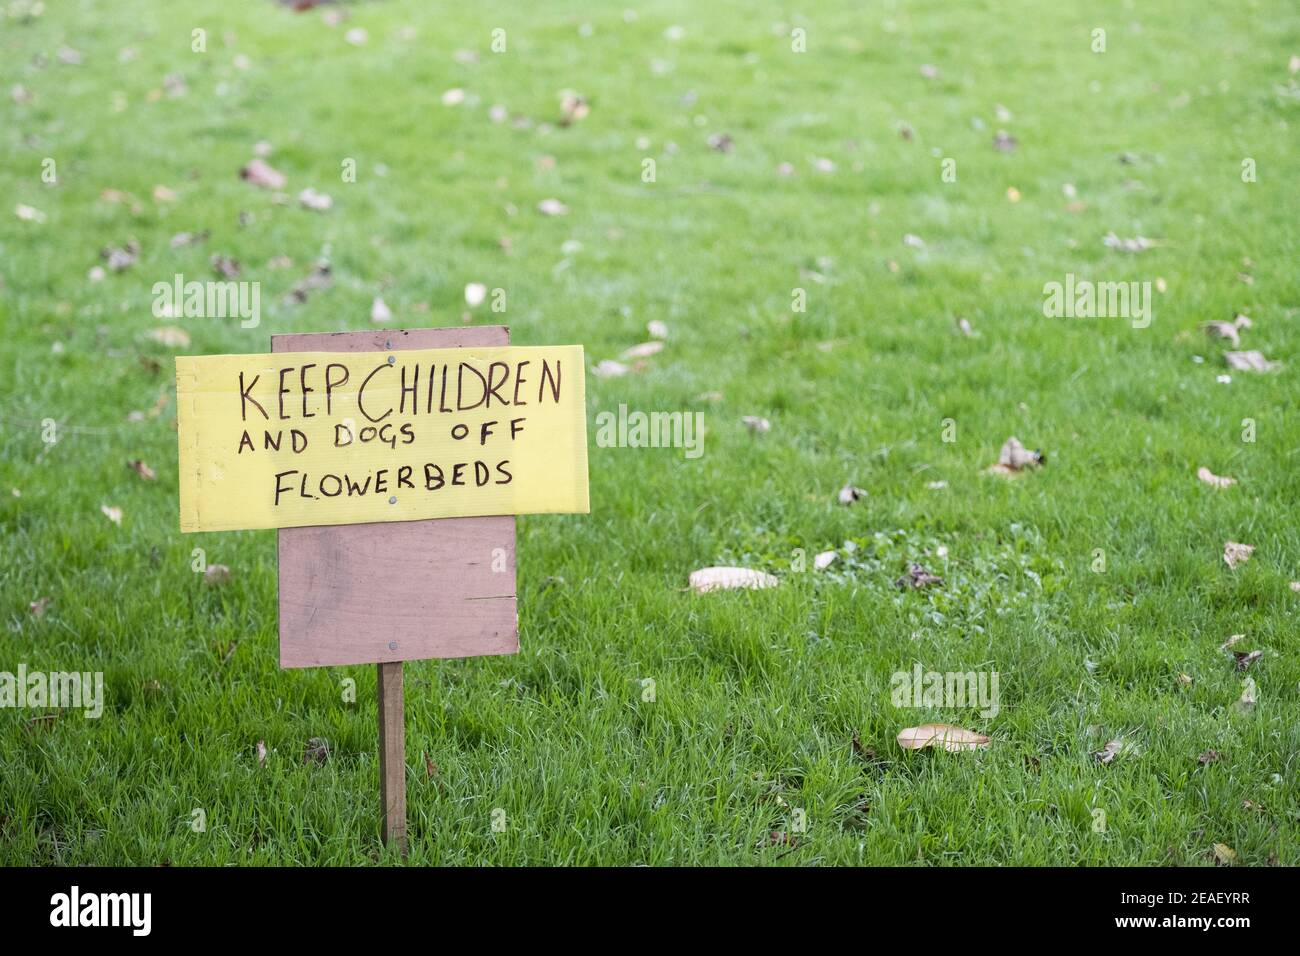 Une pancarte manuscrite demandant aux enfants et aux chiens de garder hors des parterres de fleurs. Banque D'Images